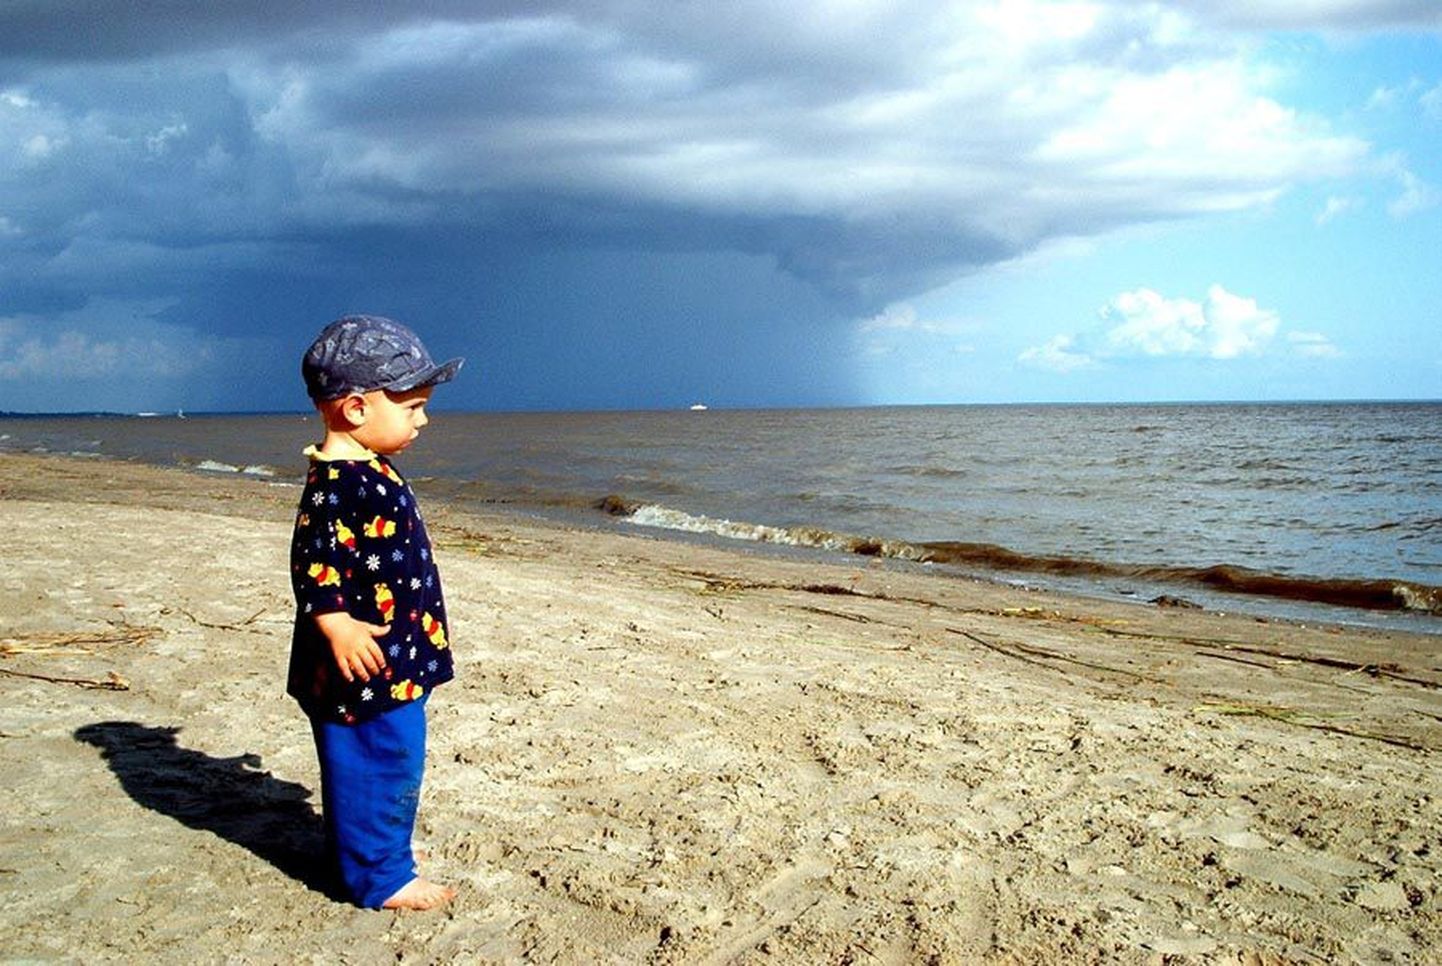 Minu poeg Pärtel vaatab elus esimest korda merd. See on ehmatav kohtumine. Aukartustäratav. Neile mõlemale.